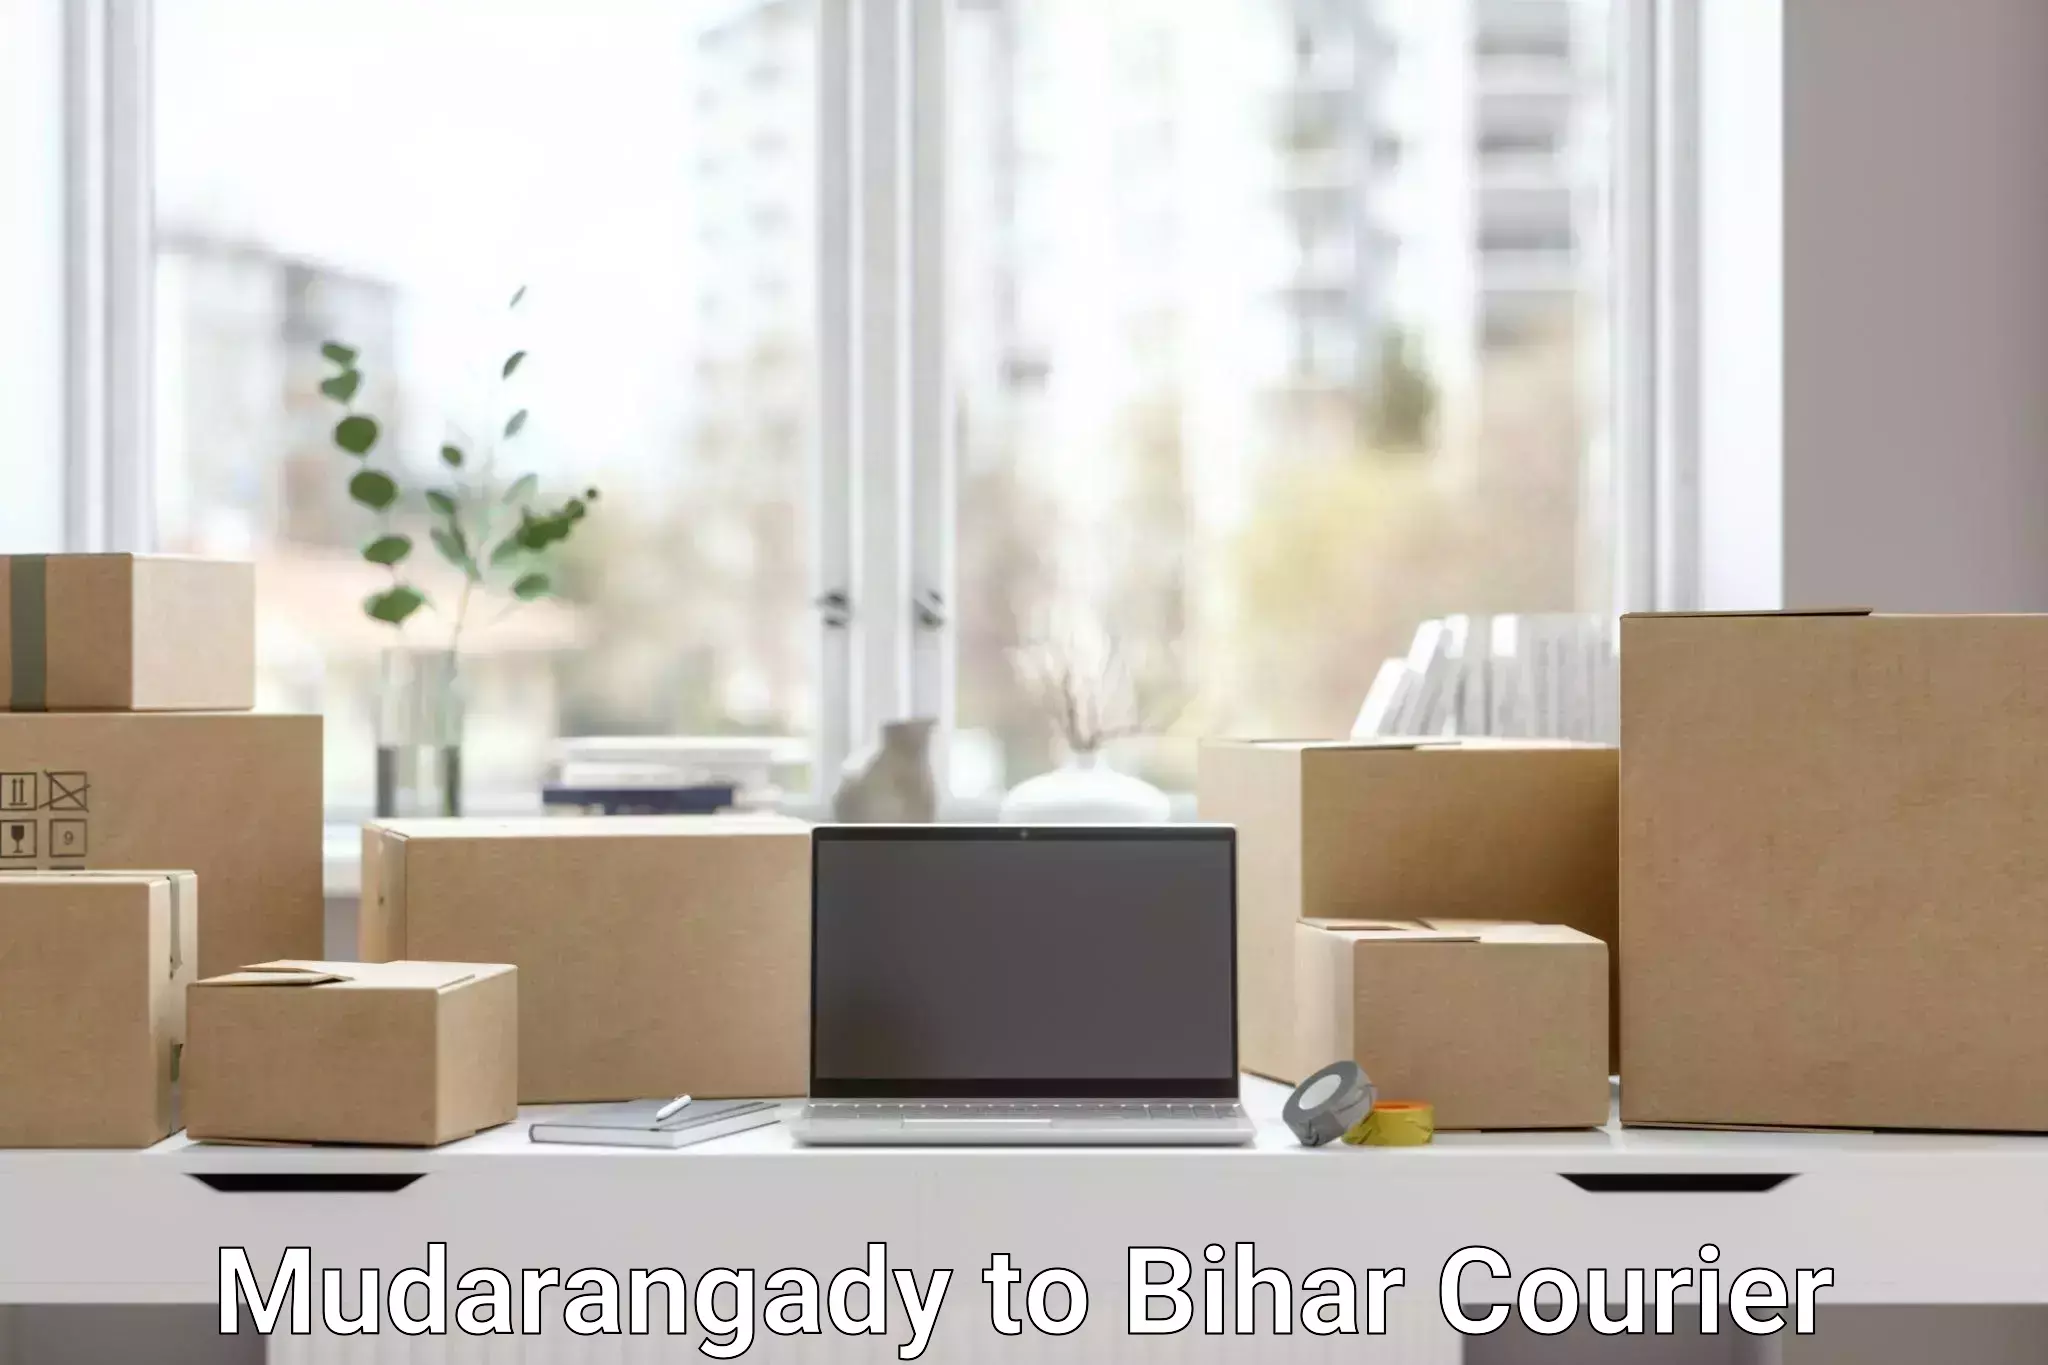 Smart shipping technology Mudarangady to Mahaddipur